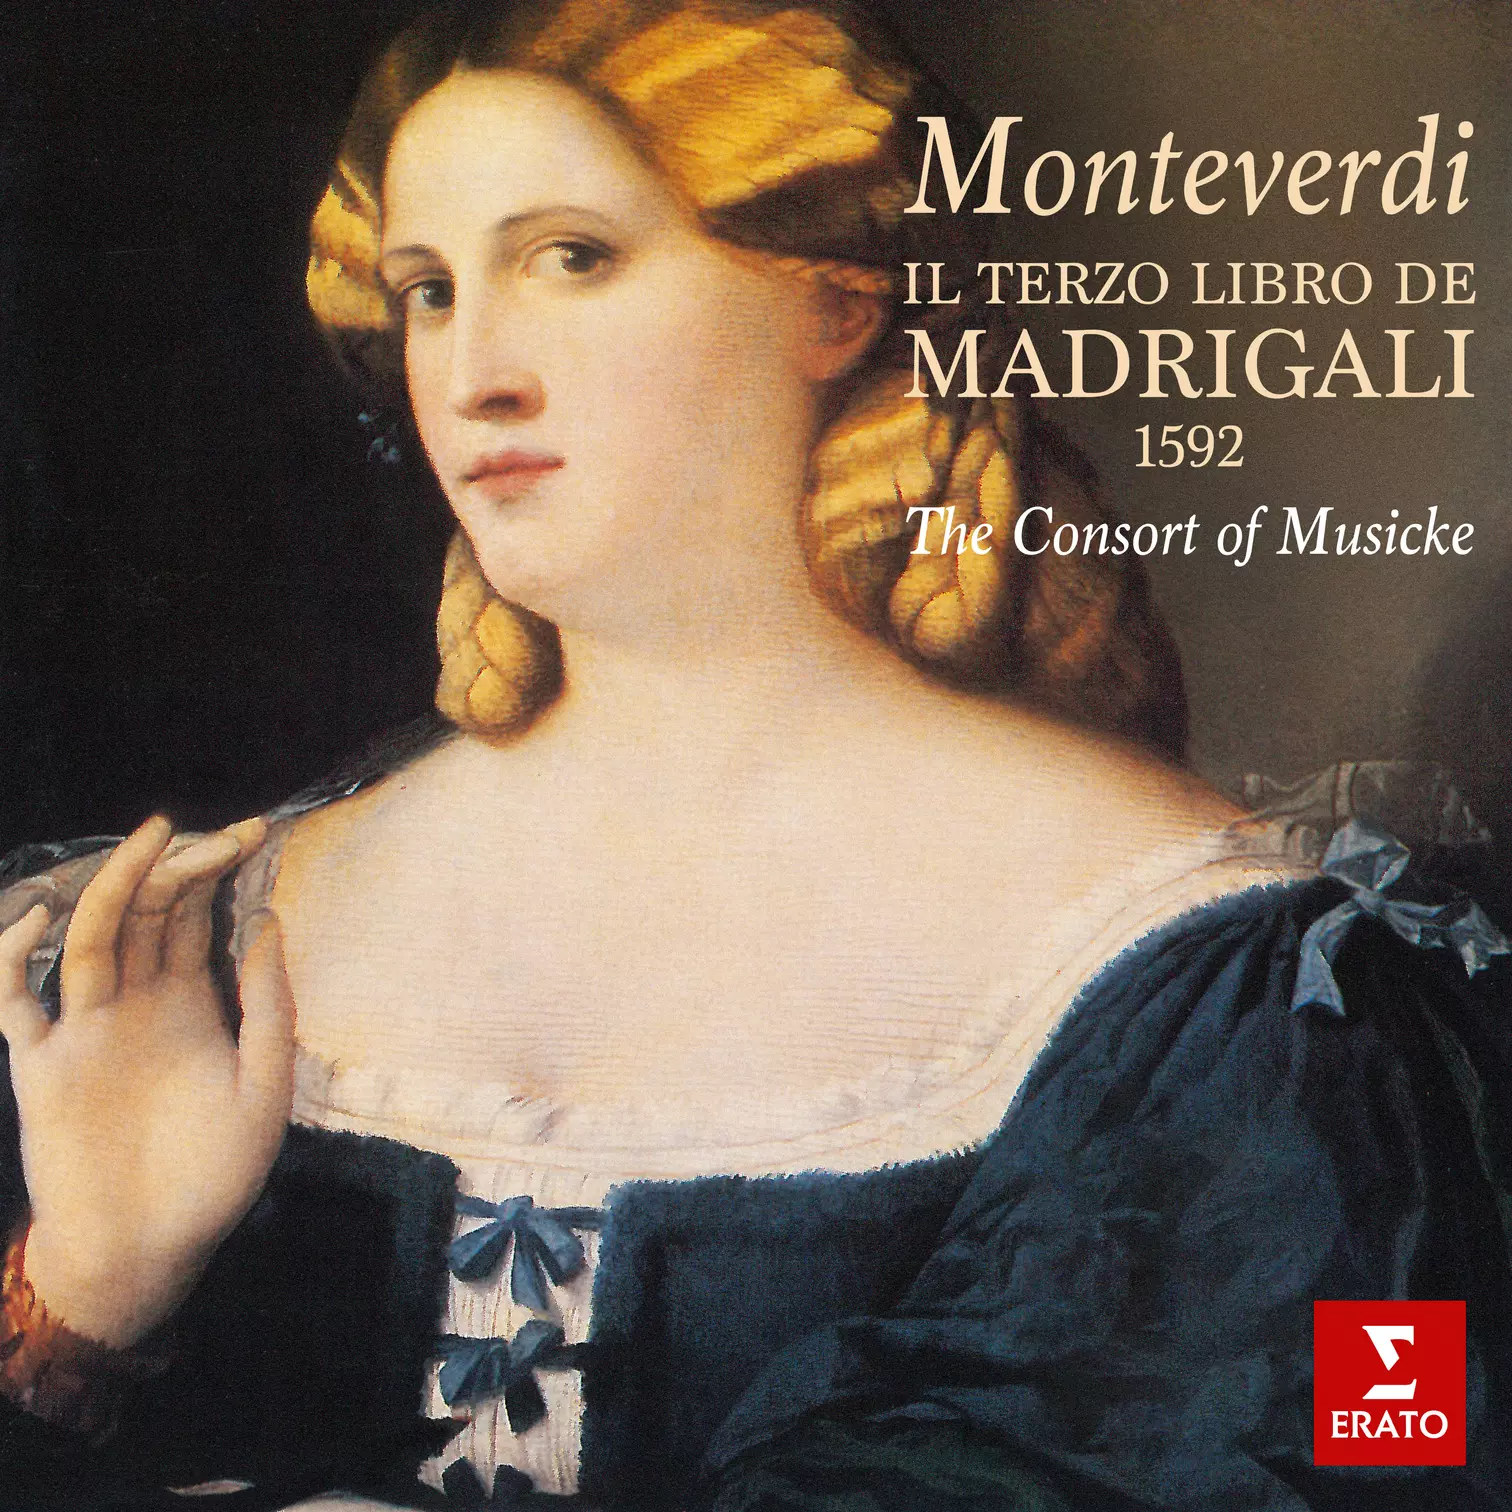 Monteverdi: Il terzo libro de madrigali